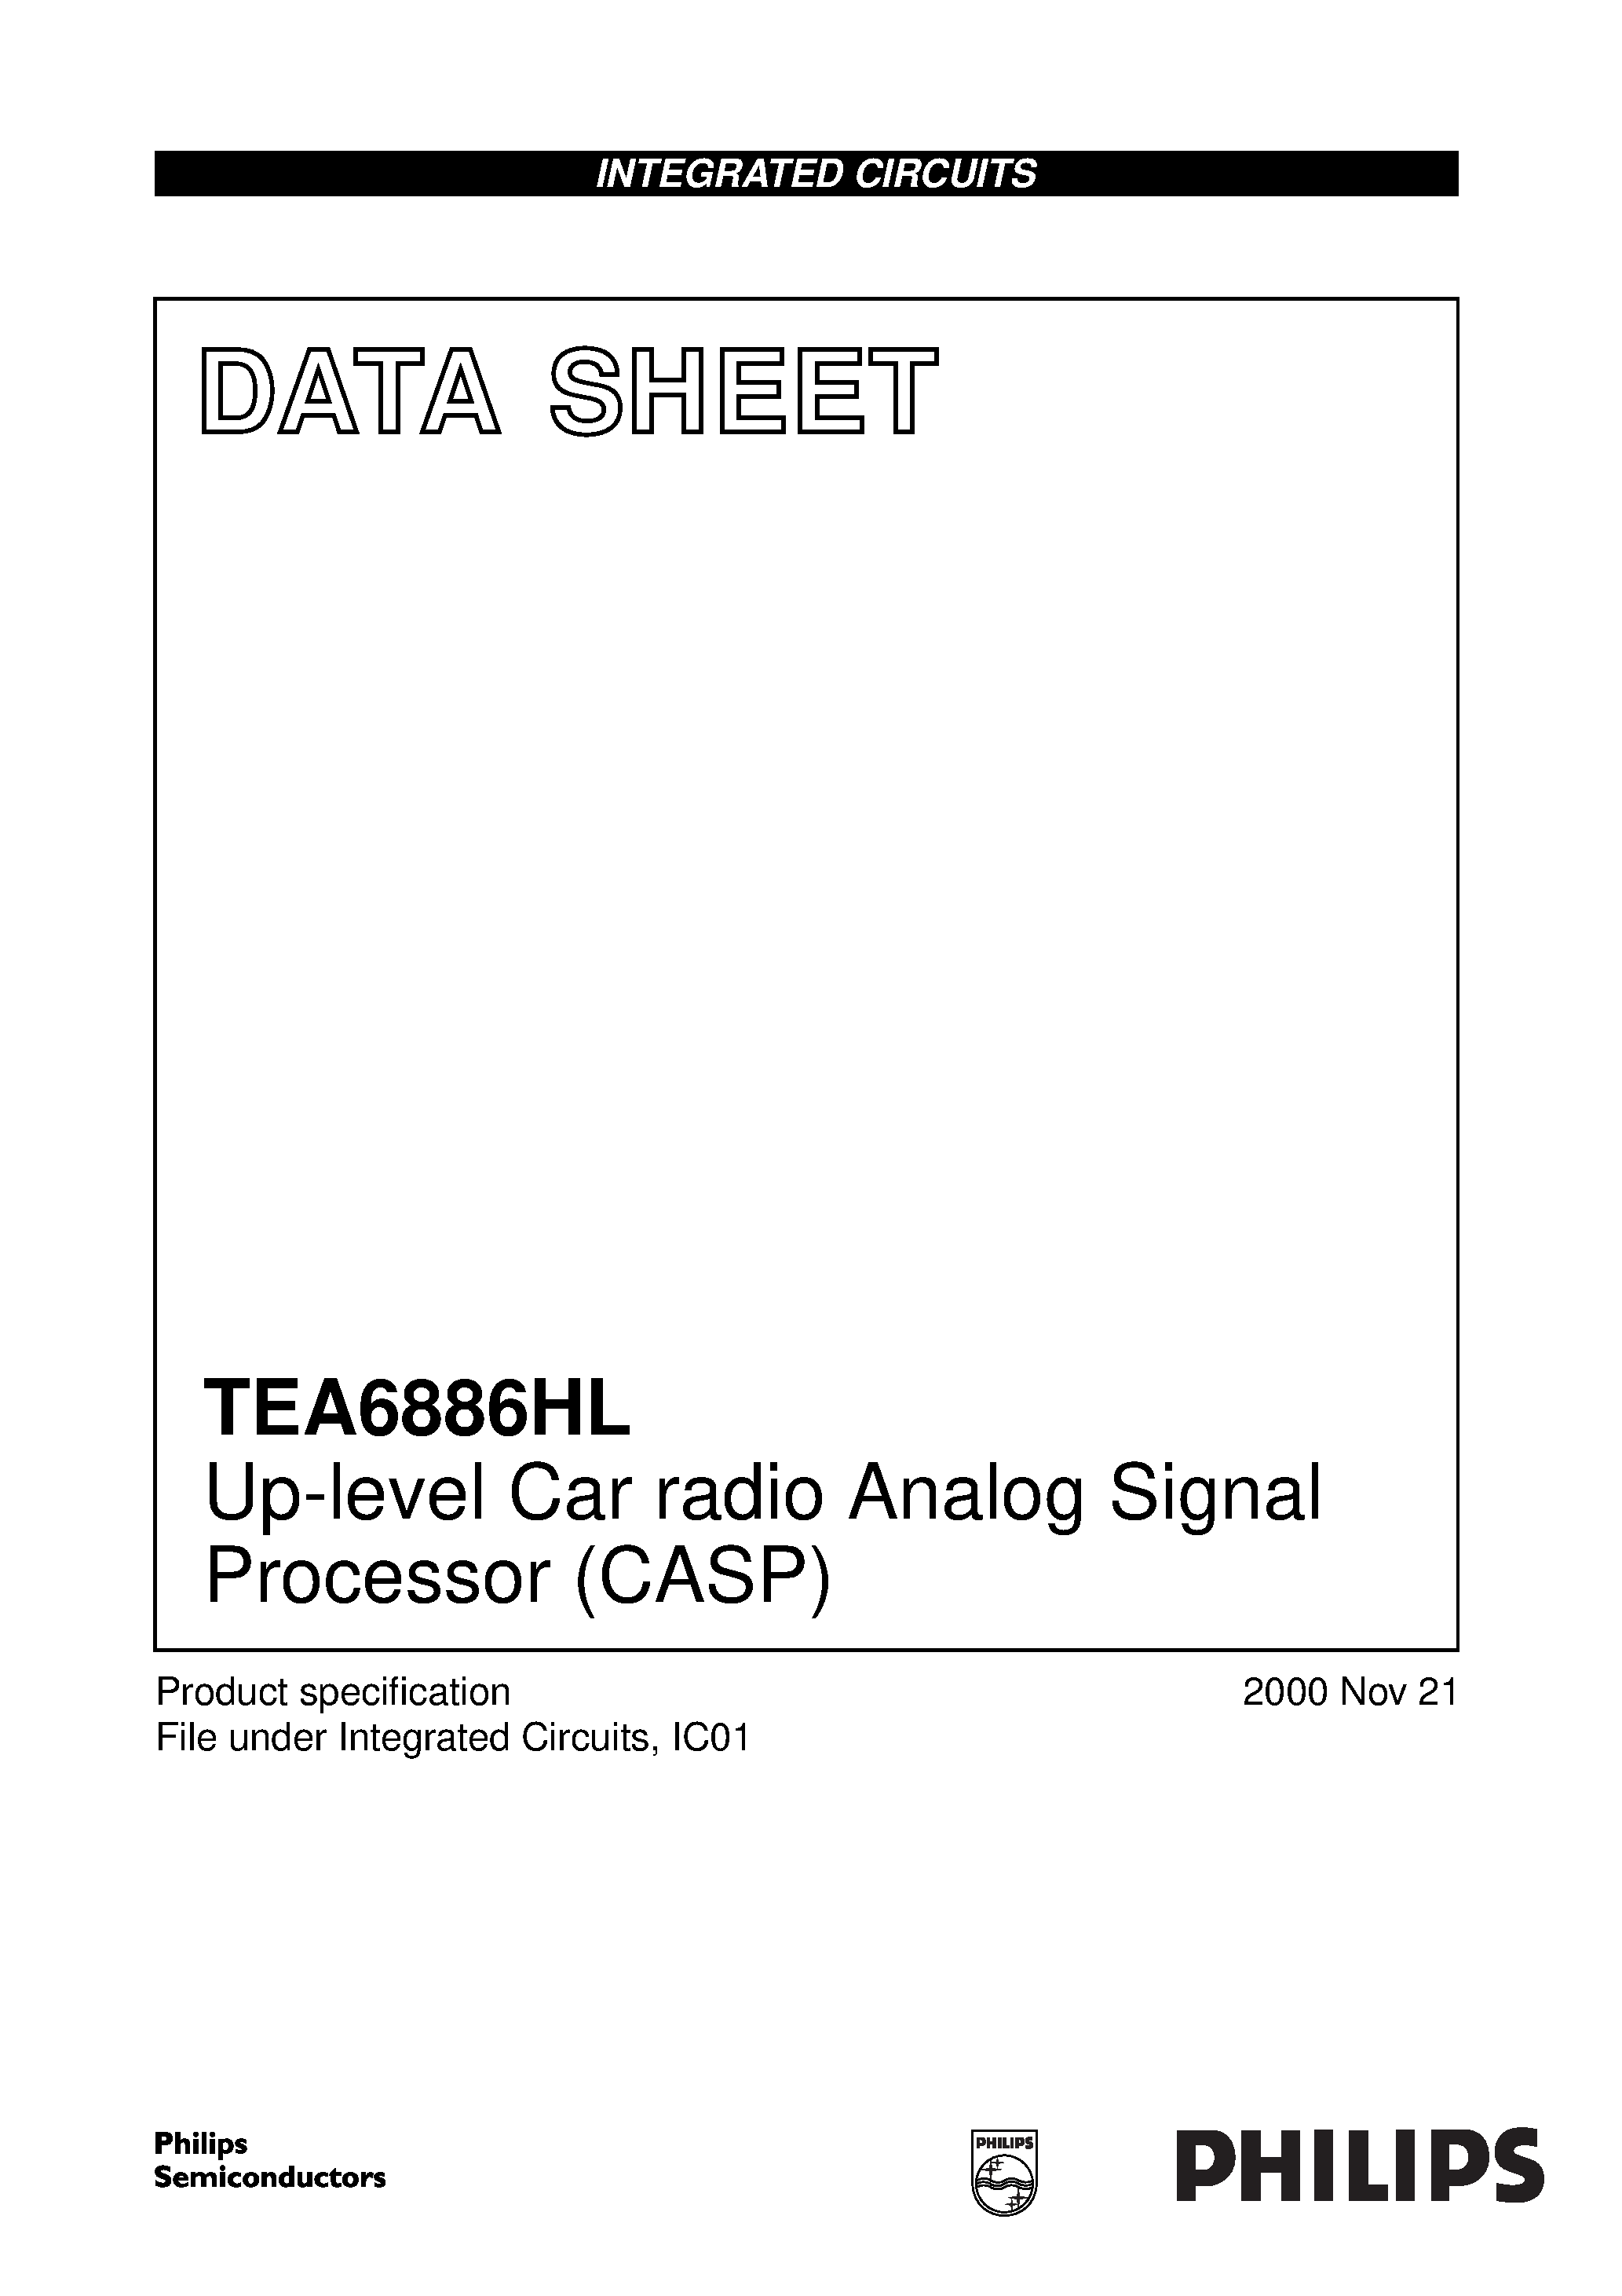 Даташит TEA6886HL - Up-level Car radio Analog Signal Processor CASP страница 1